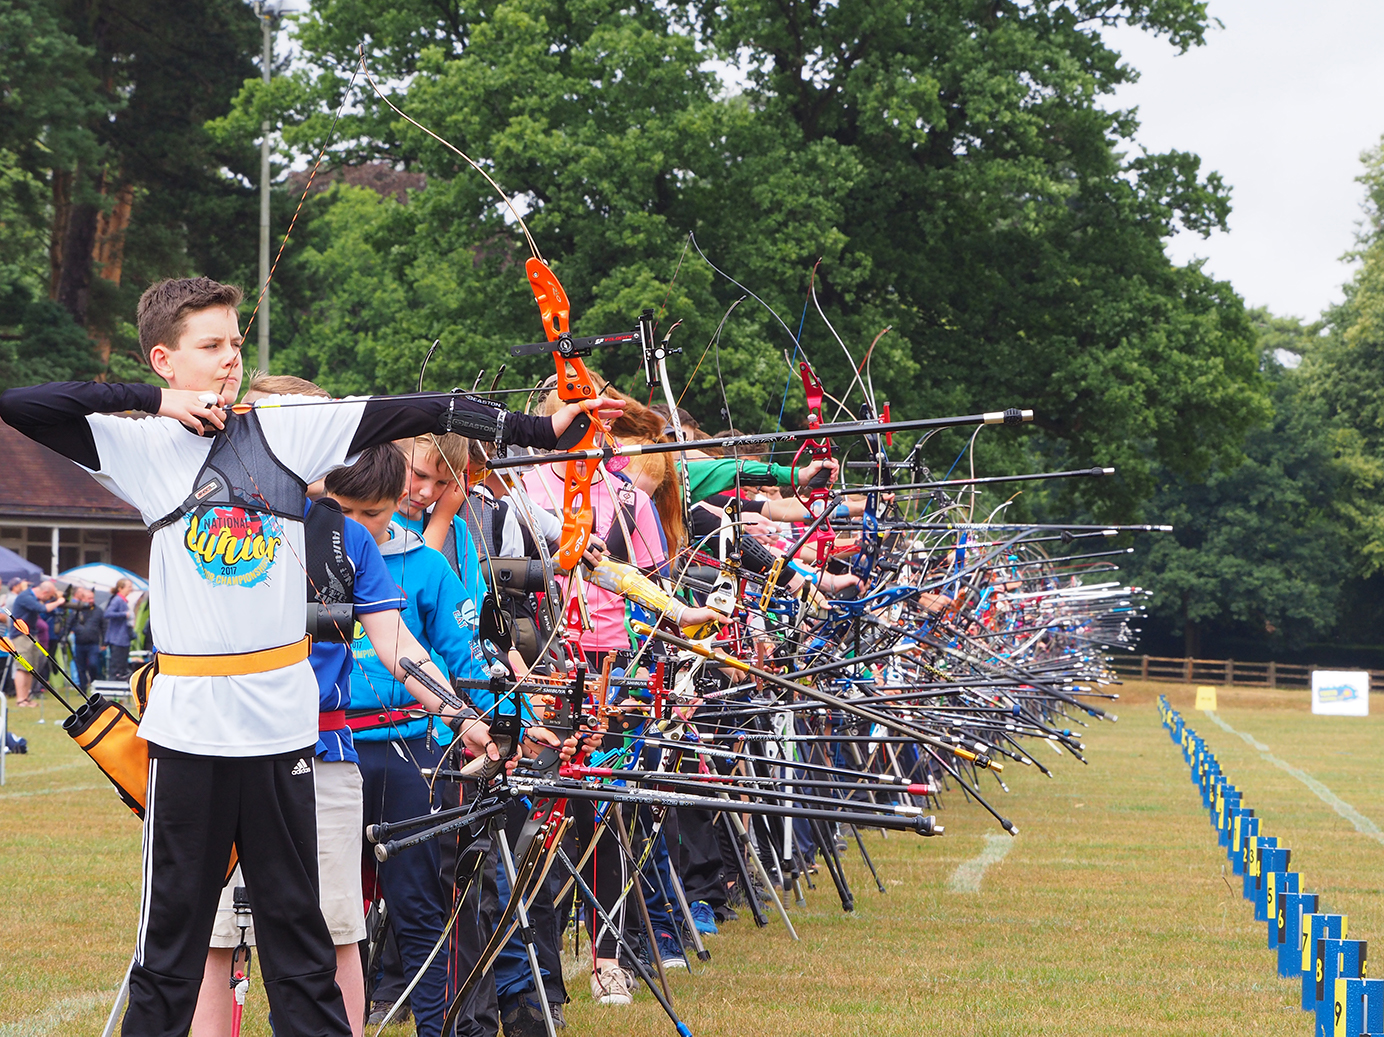 Archery club firing arrows